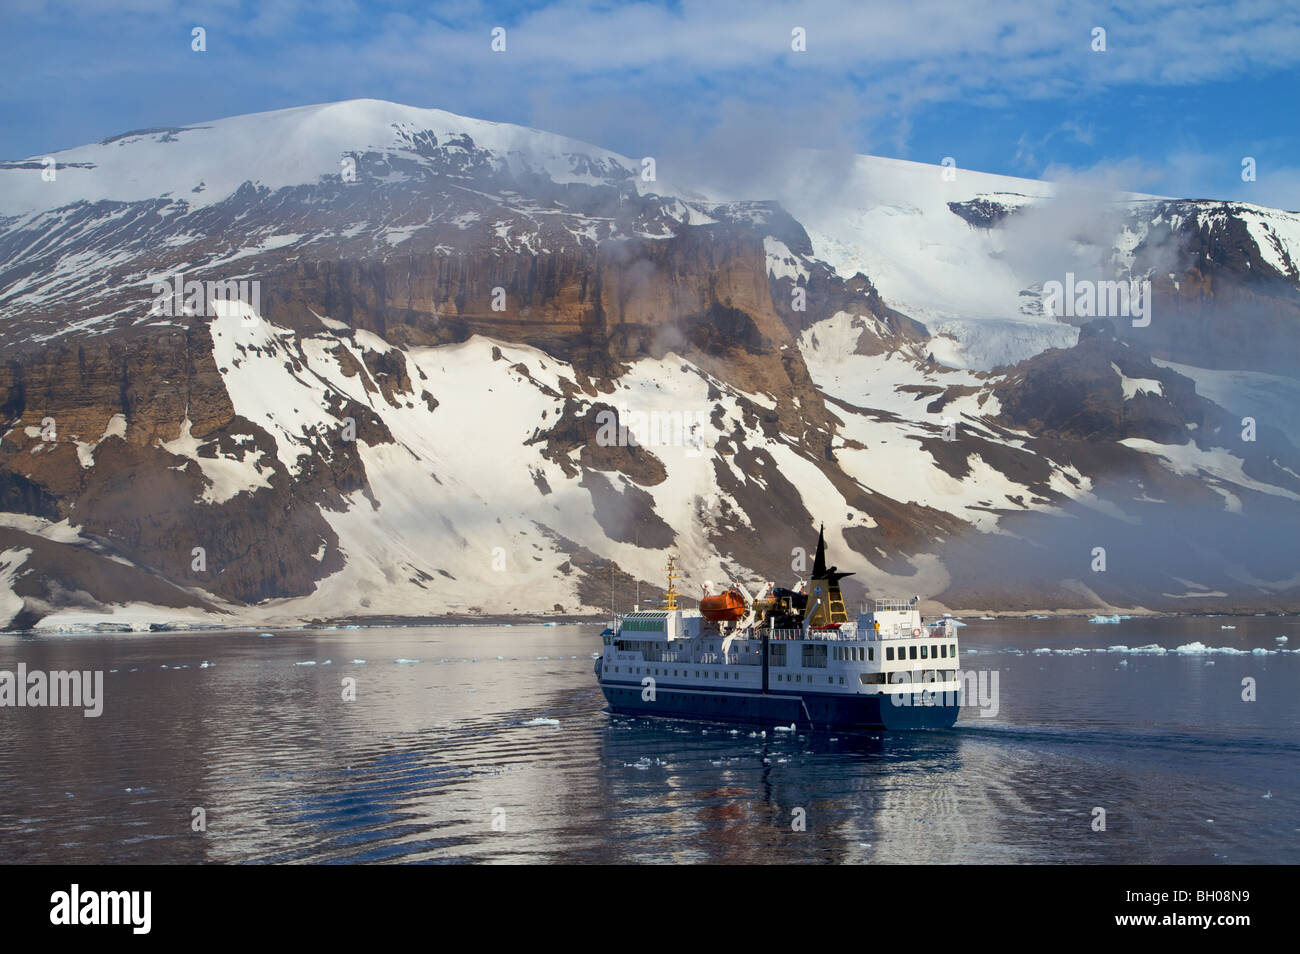 La mer, un navire de l'expédition en Antarctique. Banque D'Images